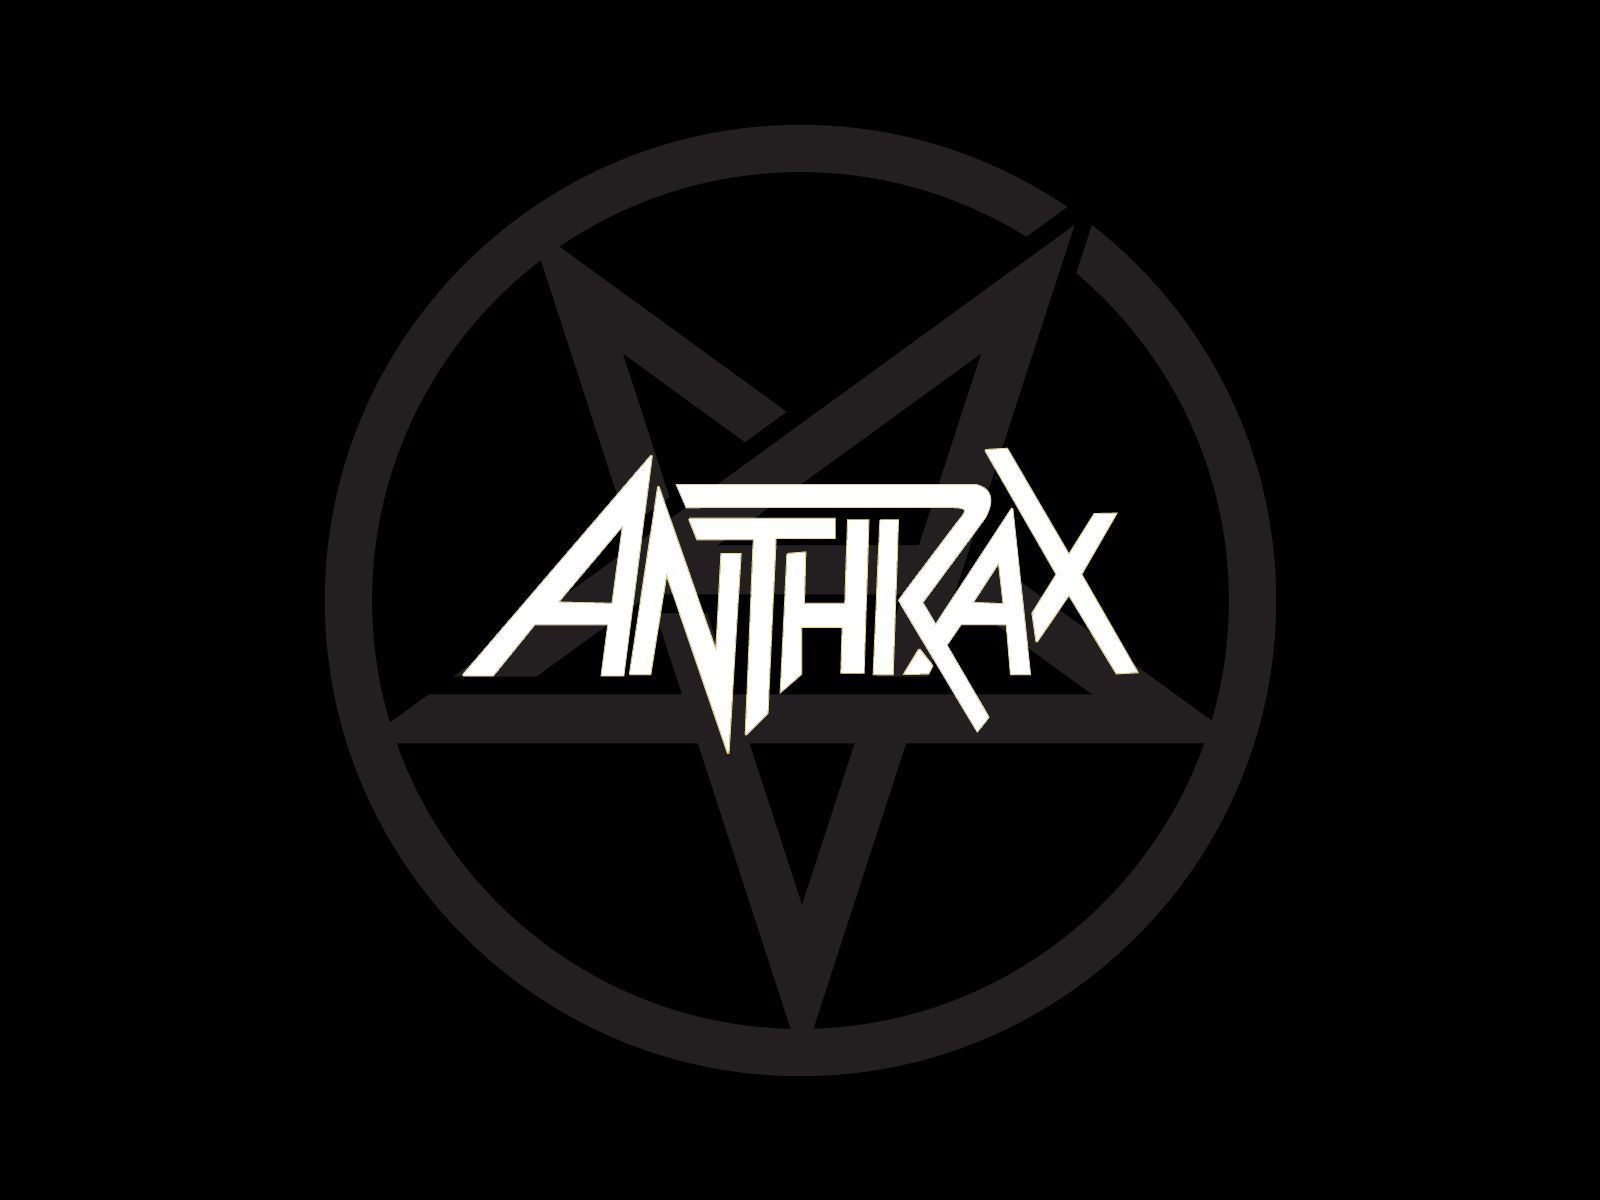 Anthrax logo and Anthrax wallpaper | Band logos - Rock band logos ...